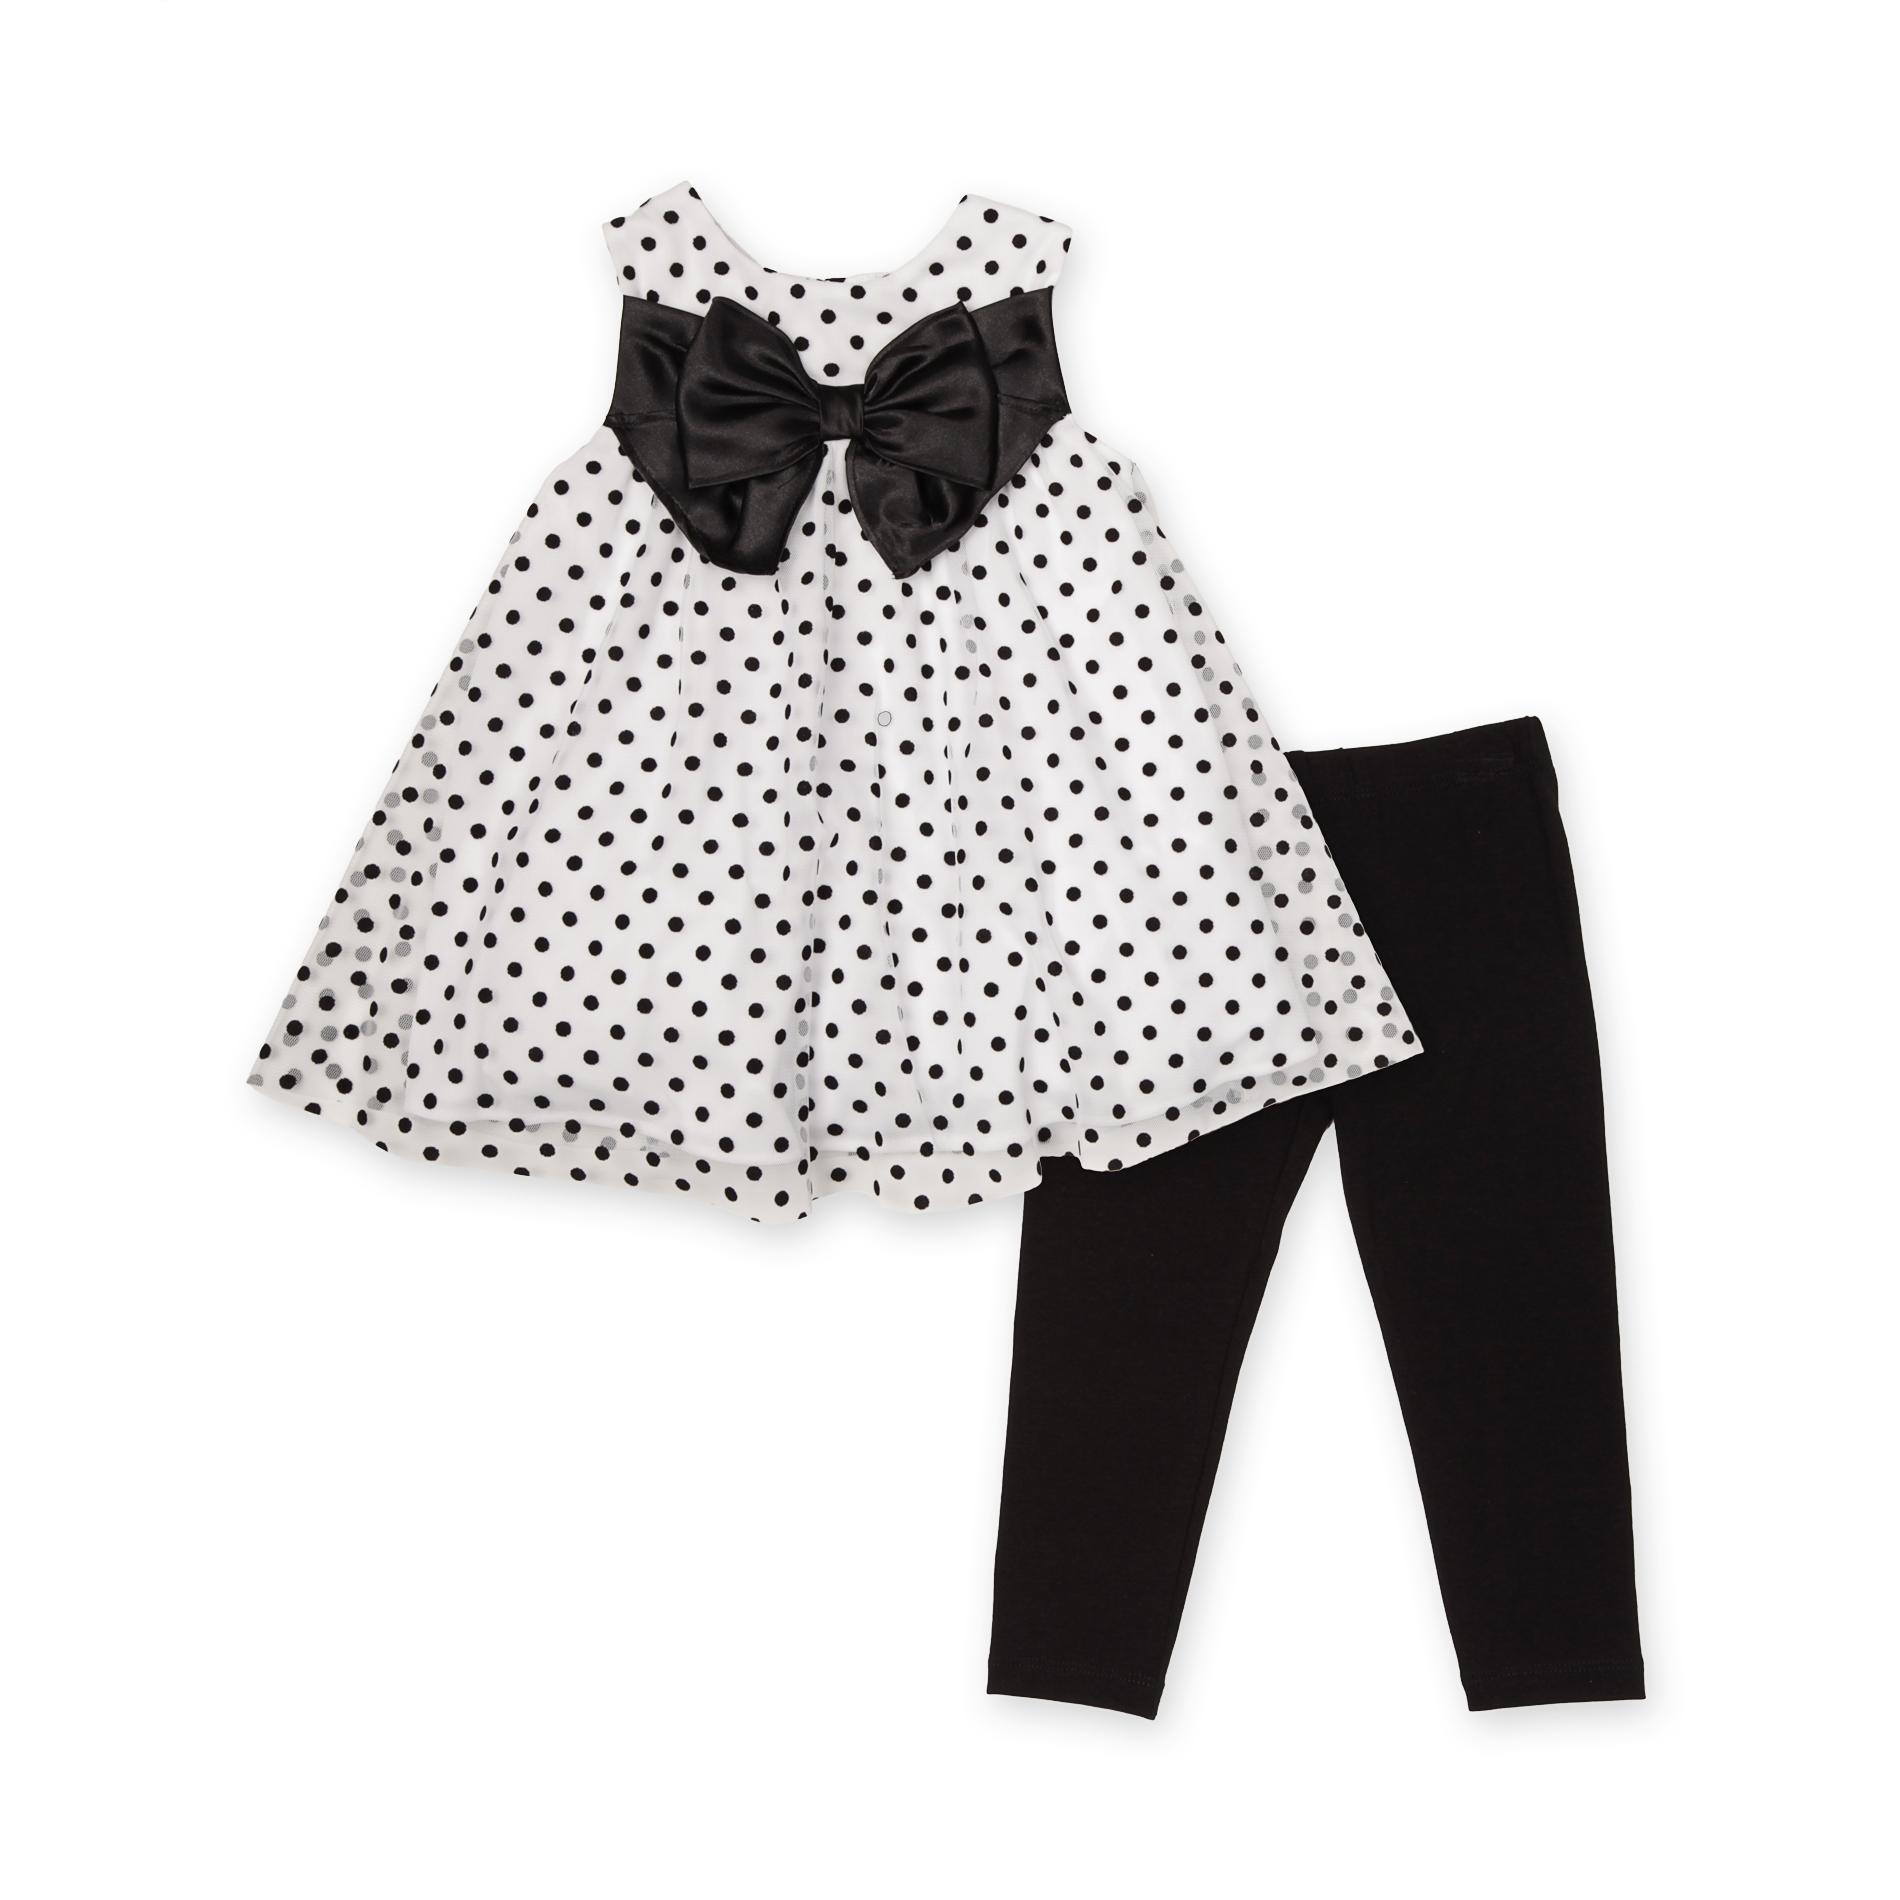 Rare Too Infant & Toddler Girl's Tunic & Leggings - Polka Dot